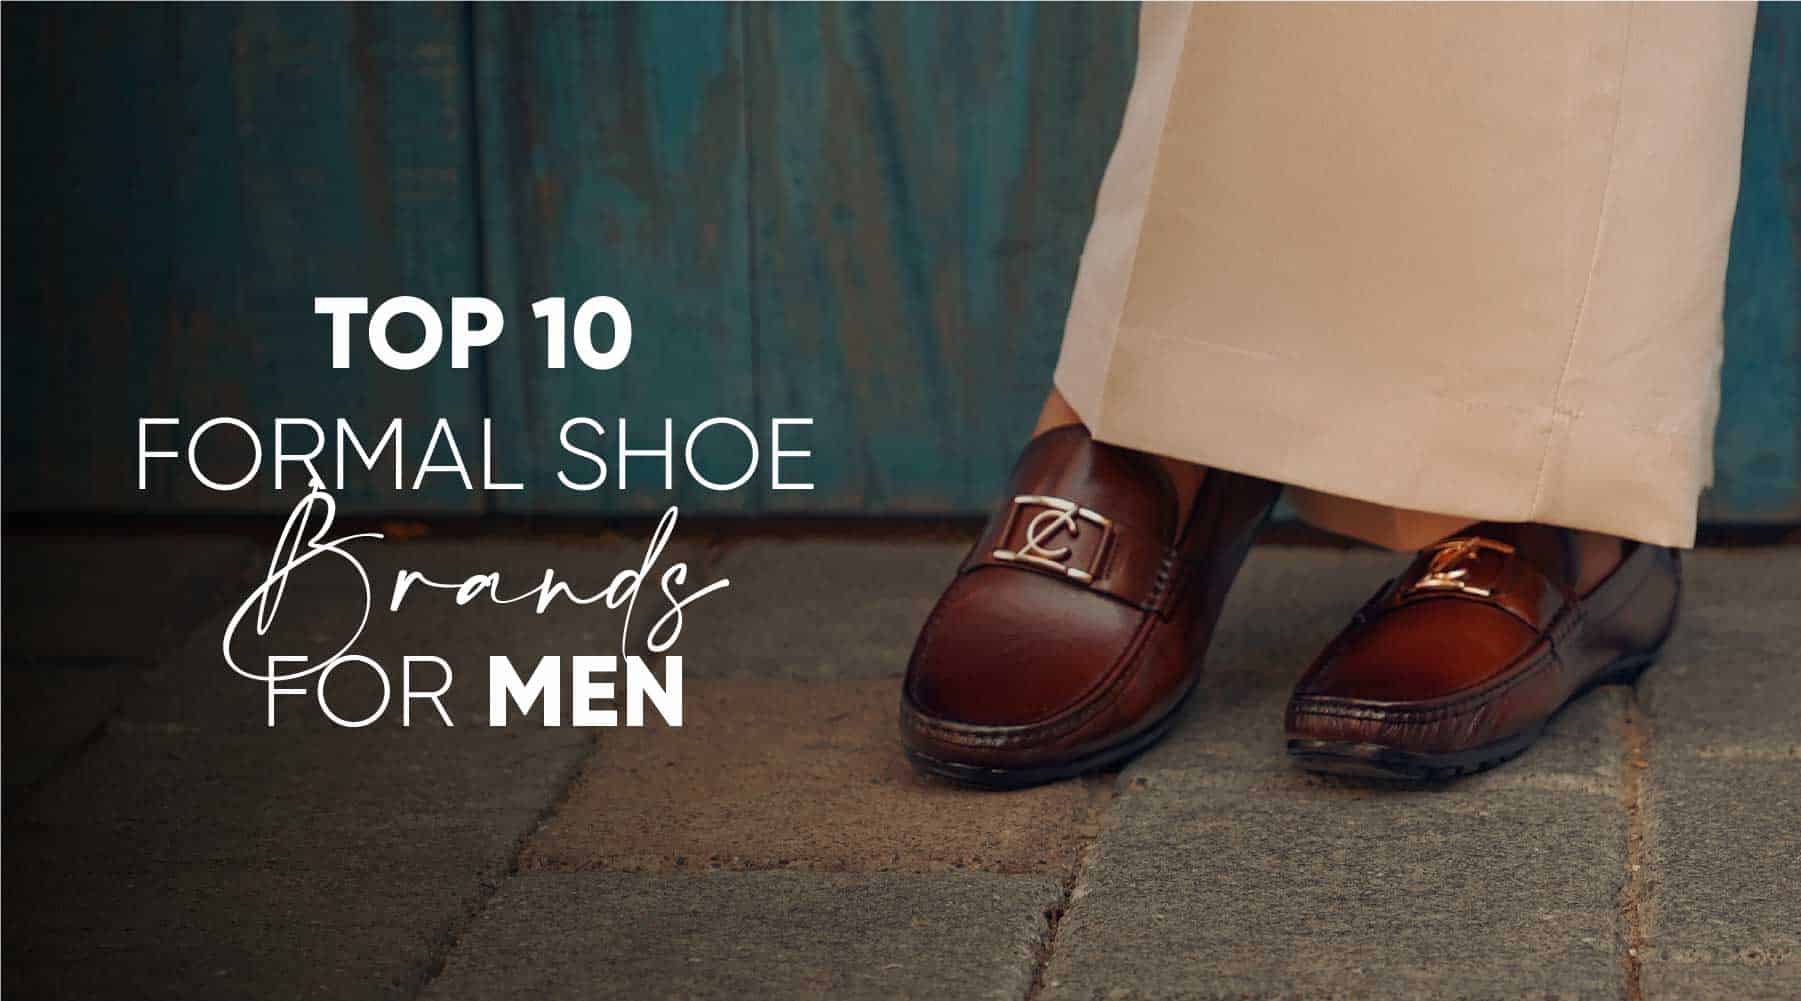 Top 10 Formal Shoe Brands for Men in Pakistan